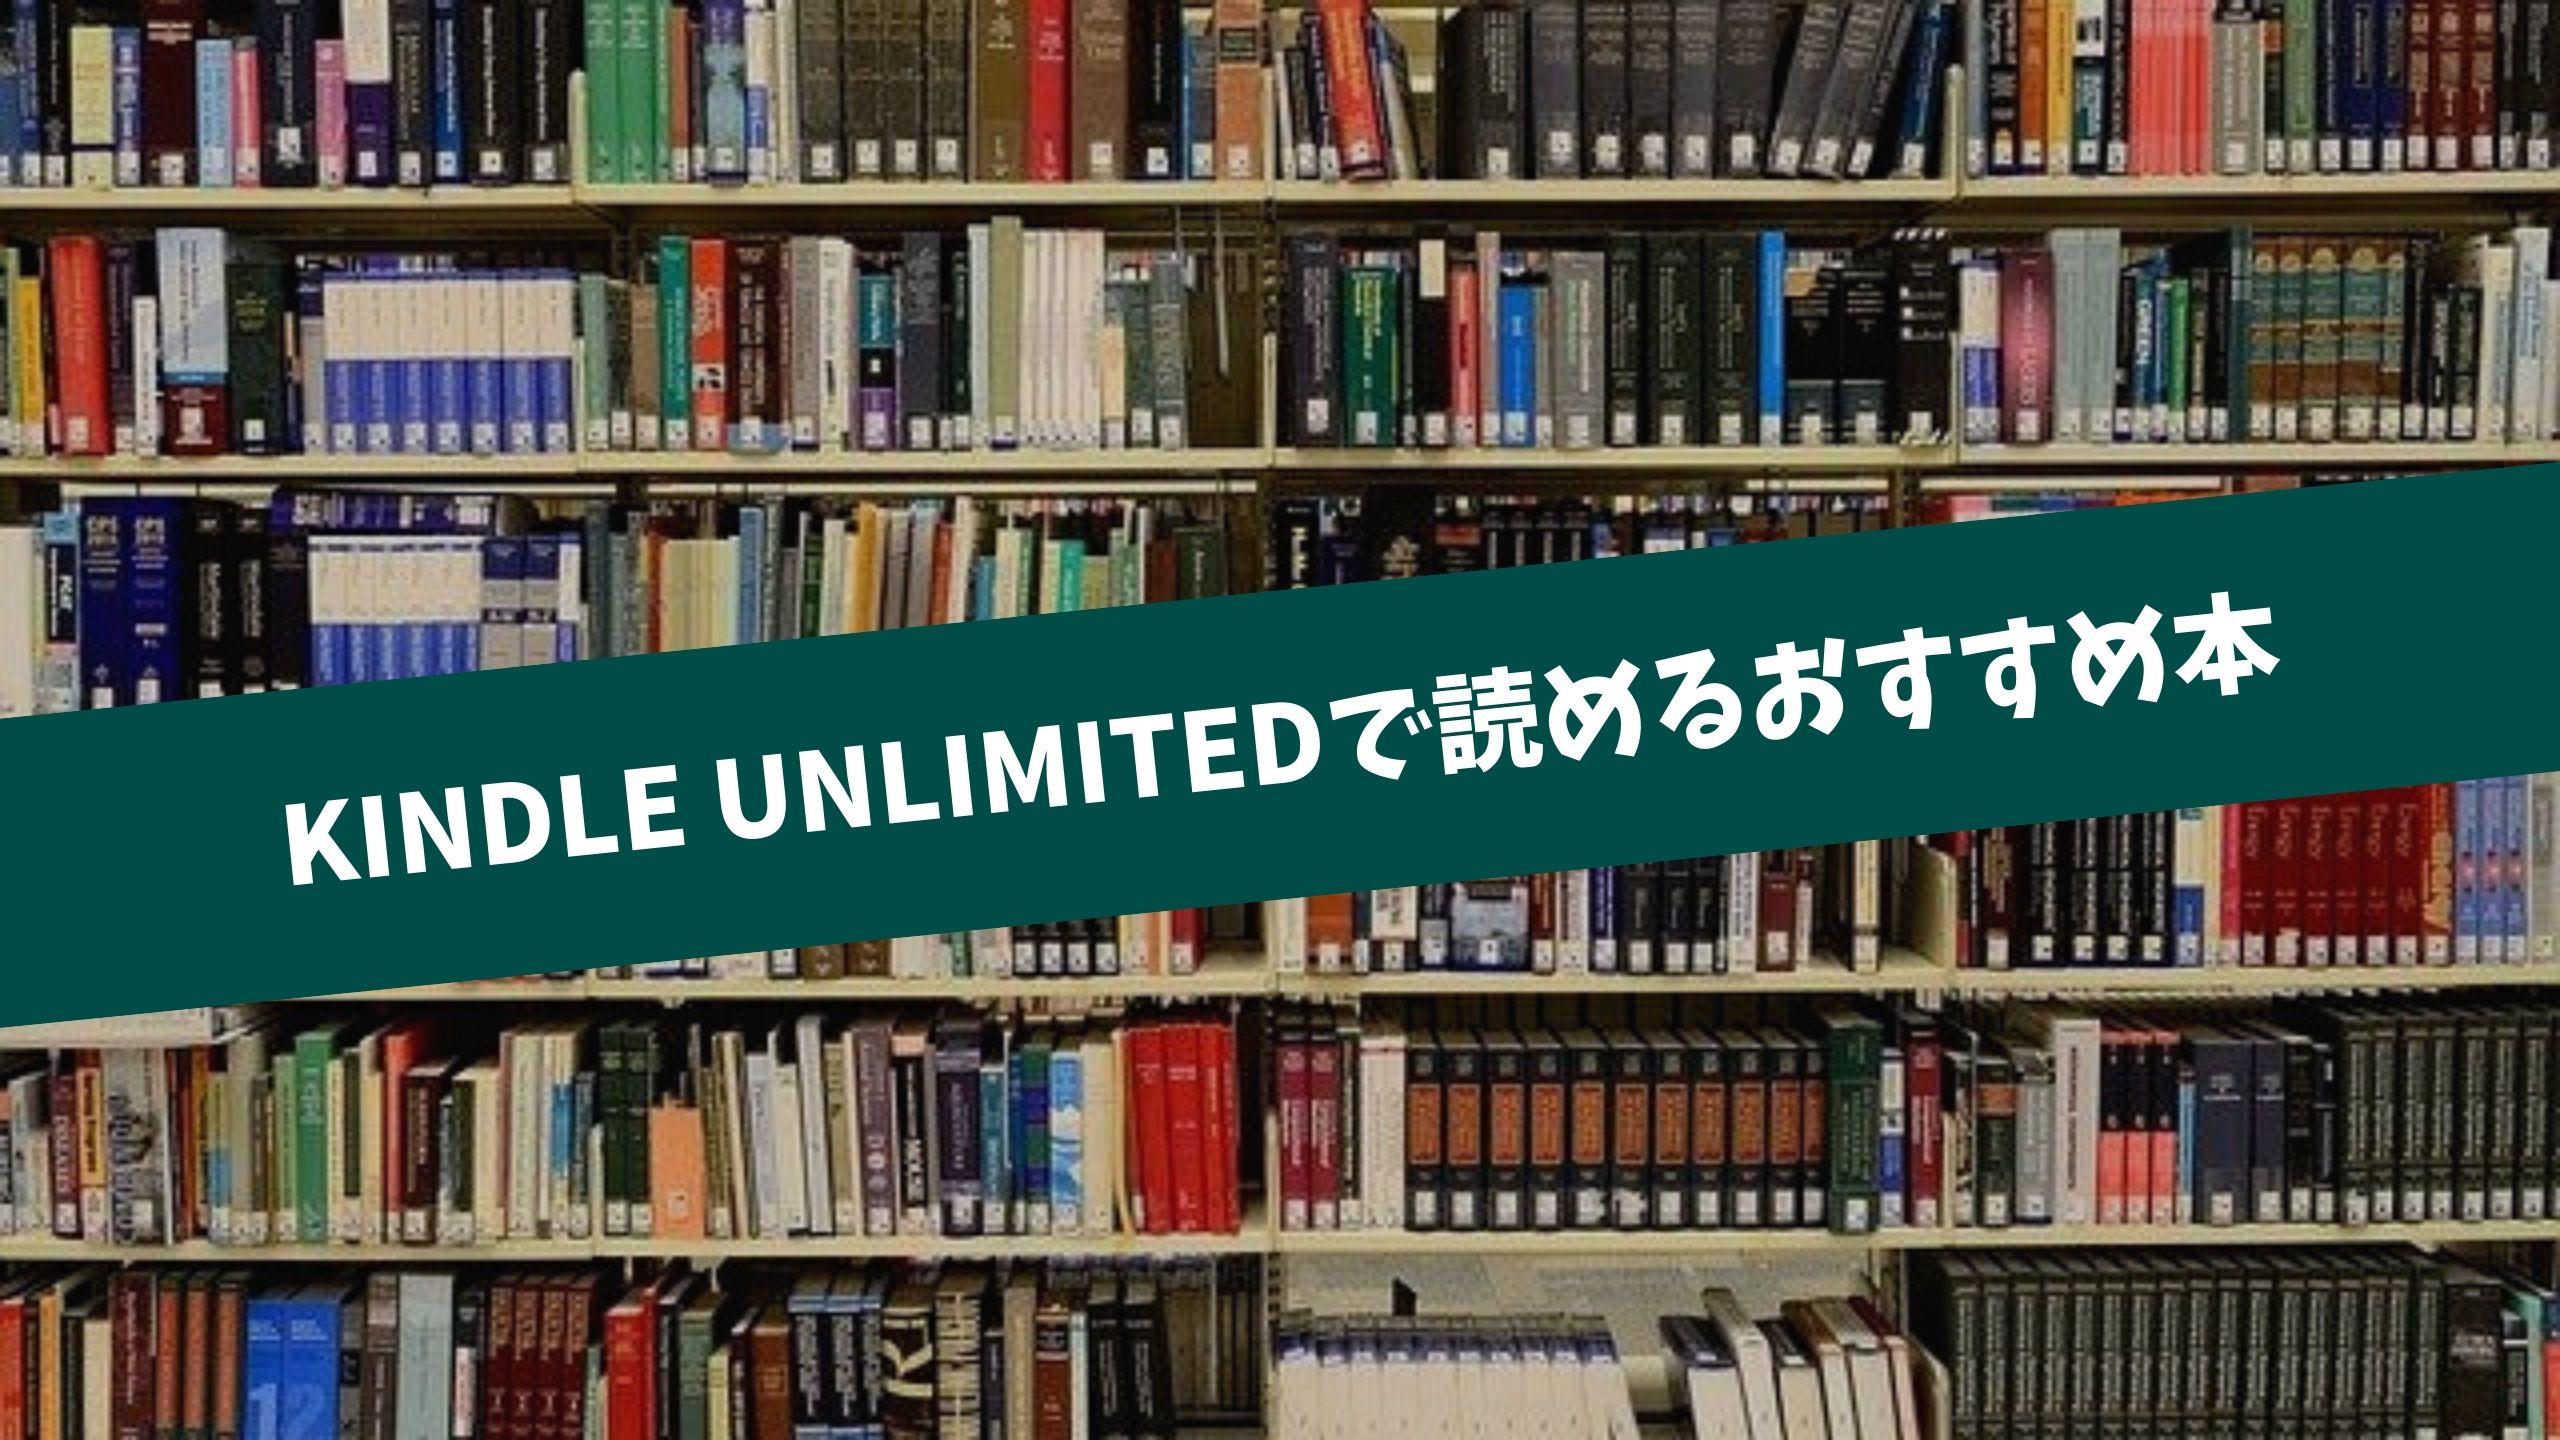 Kindle Unlimitedで読めるおすすめ本60選 22年2月最新の厳選ラインナップ 英語マイスター